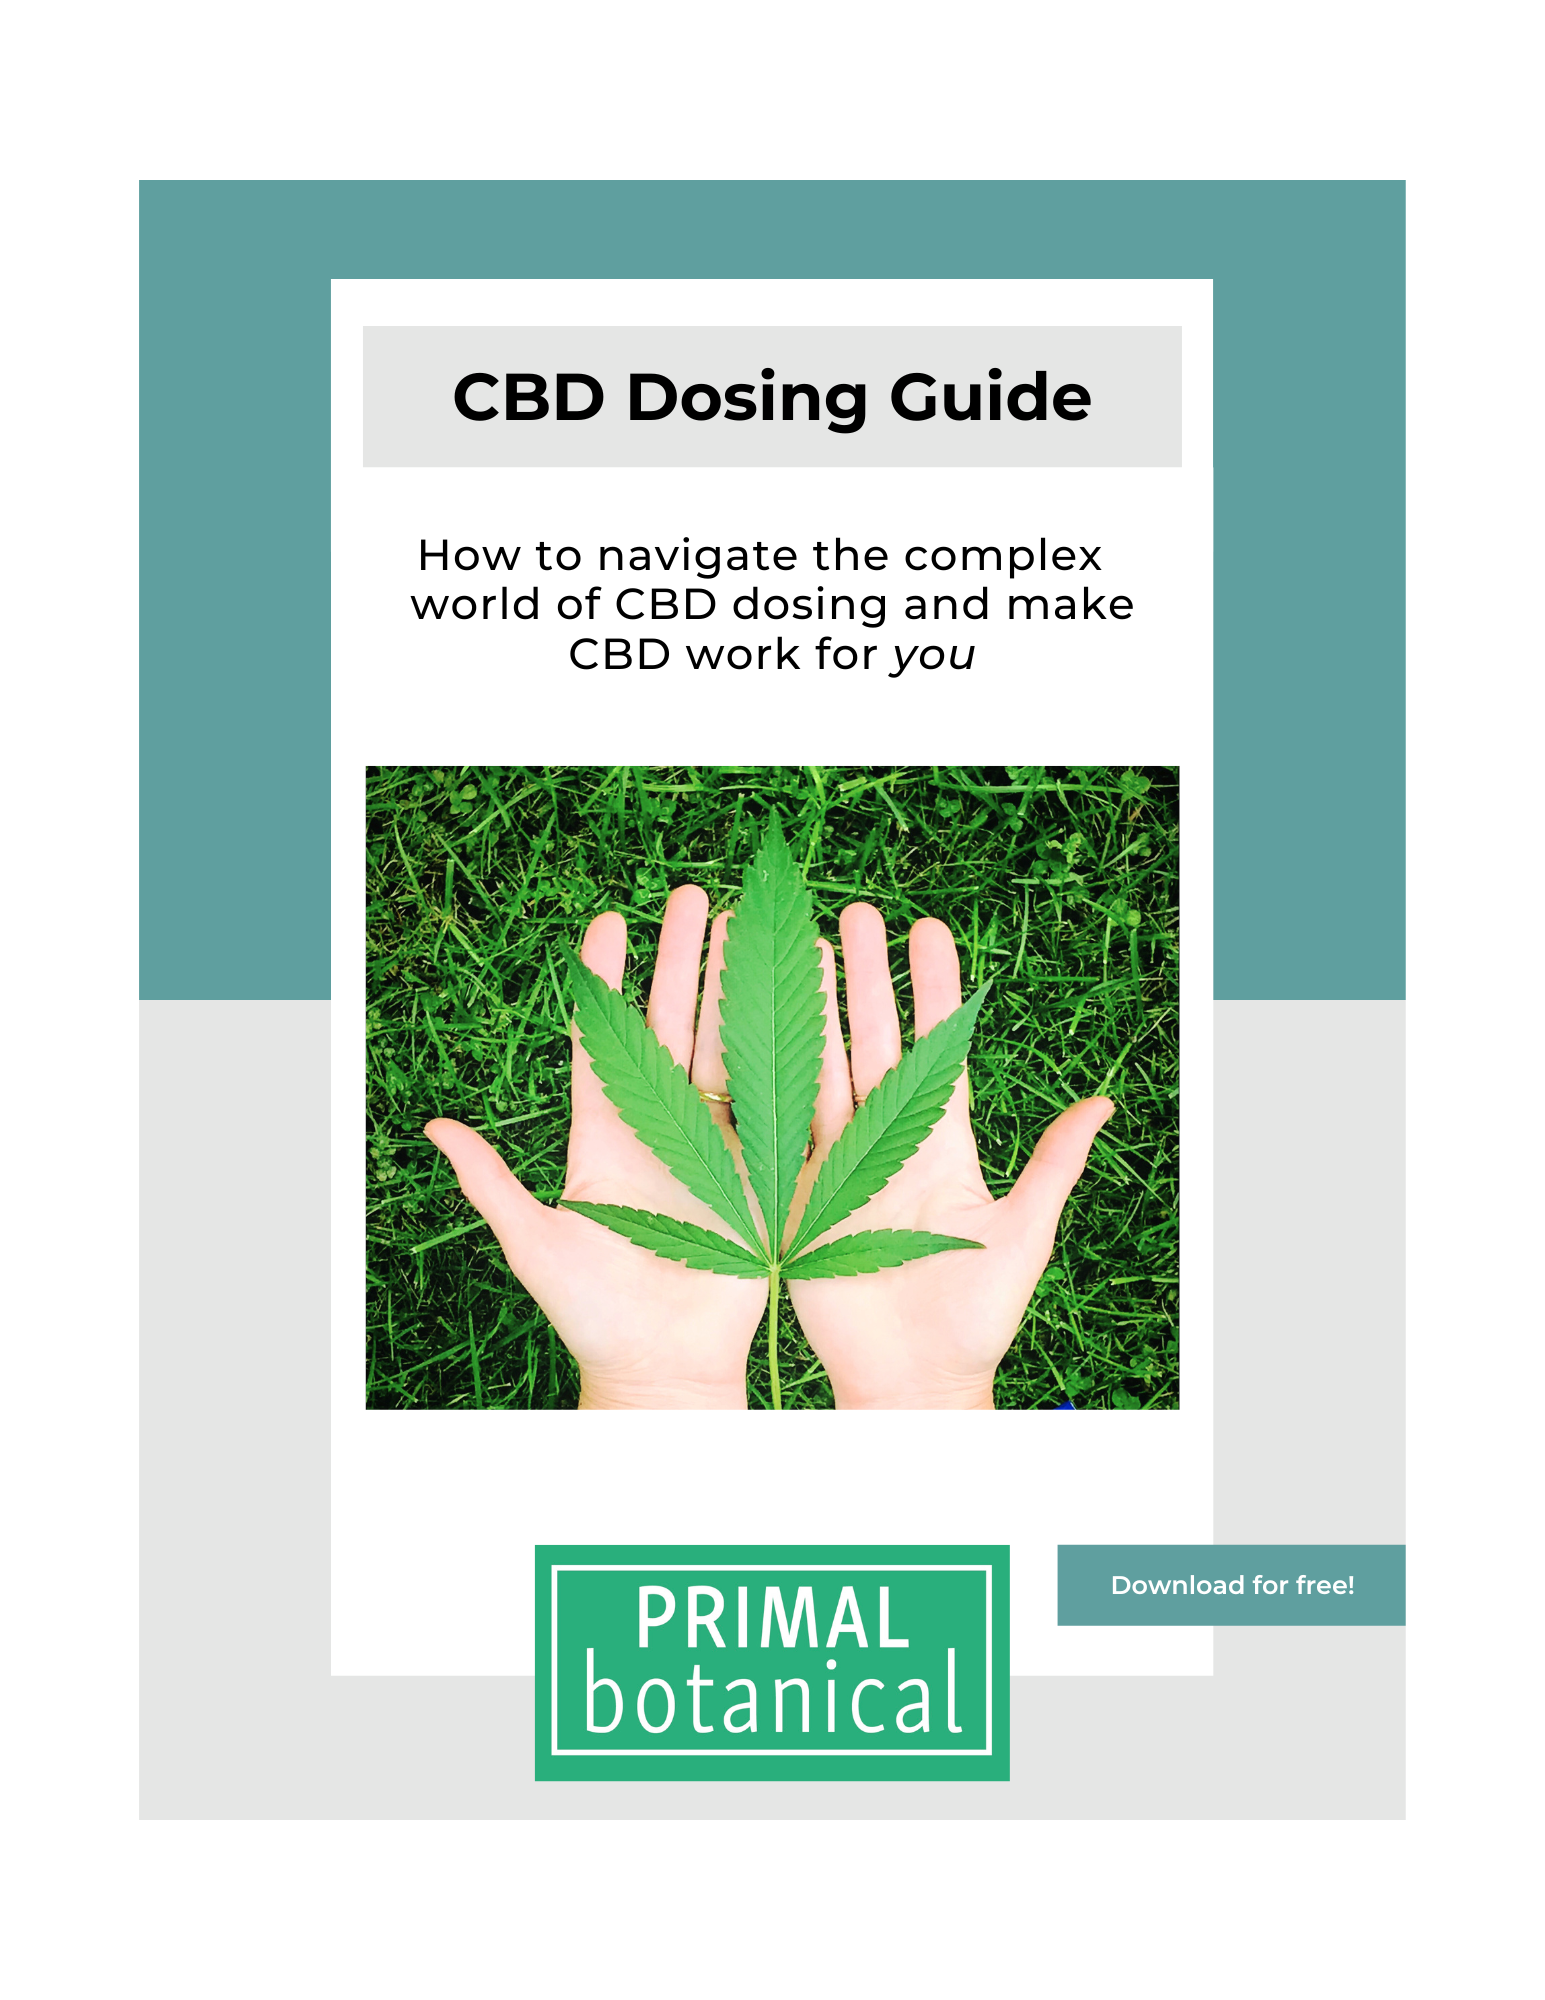 CBD dosing guide